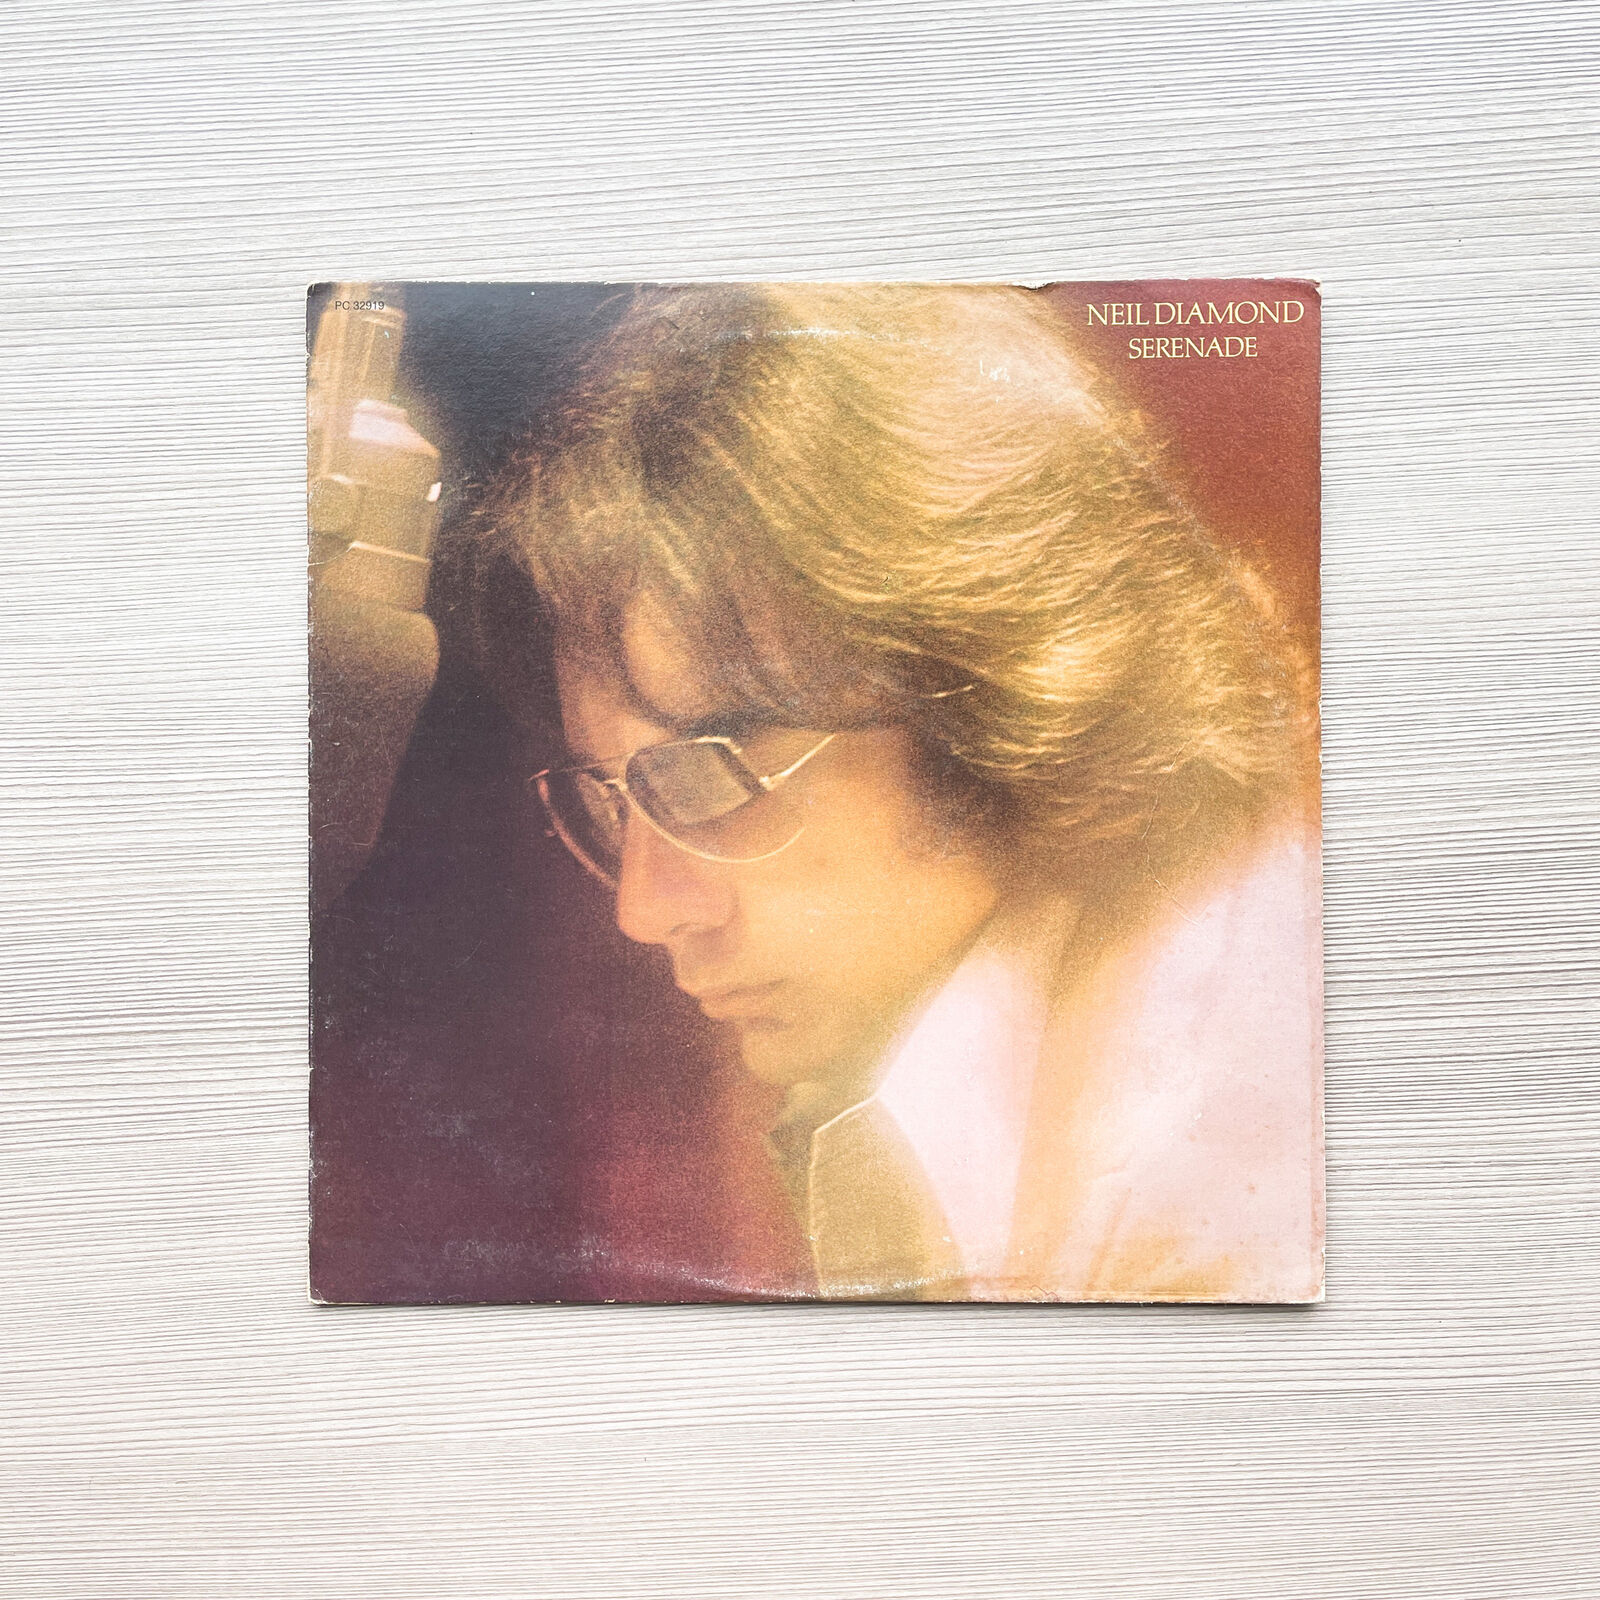 Neil Diamond - Serenade - Vinyl LP Record - 1974